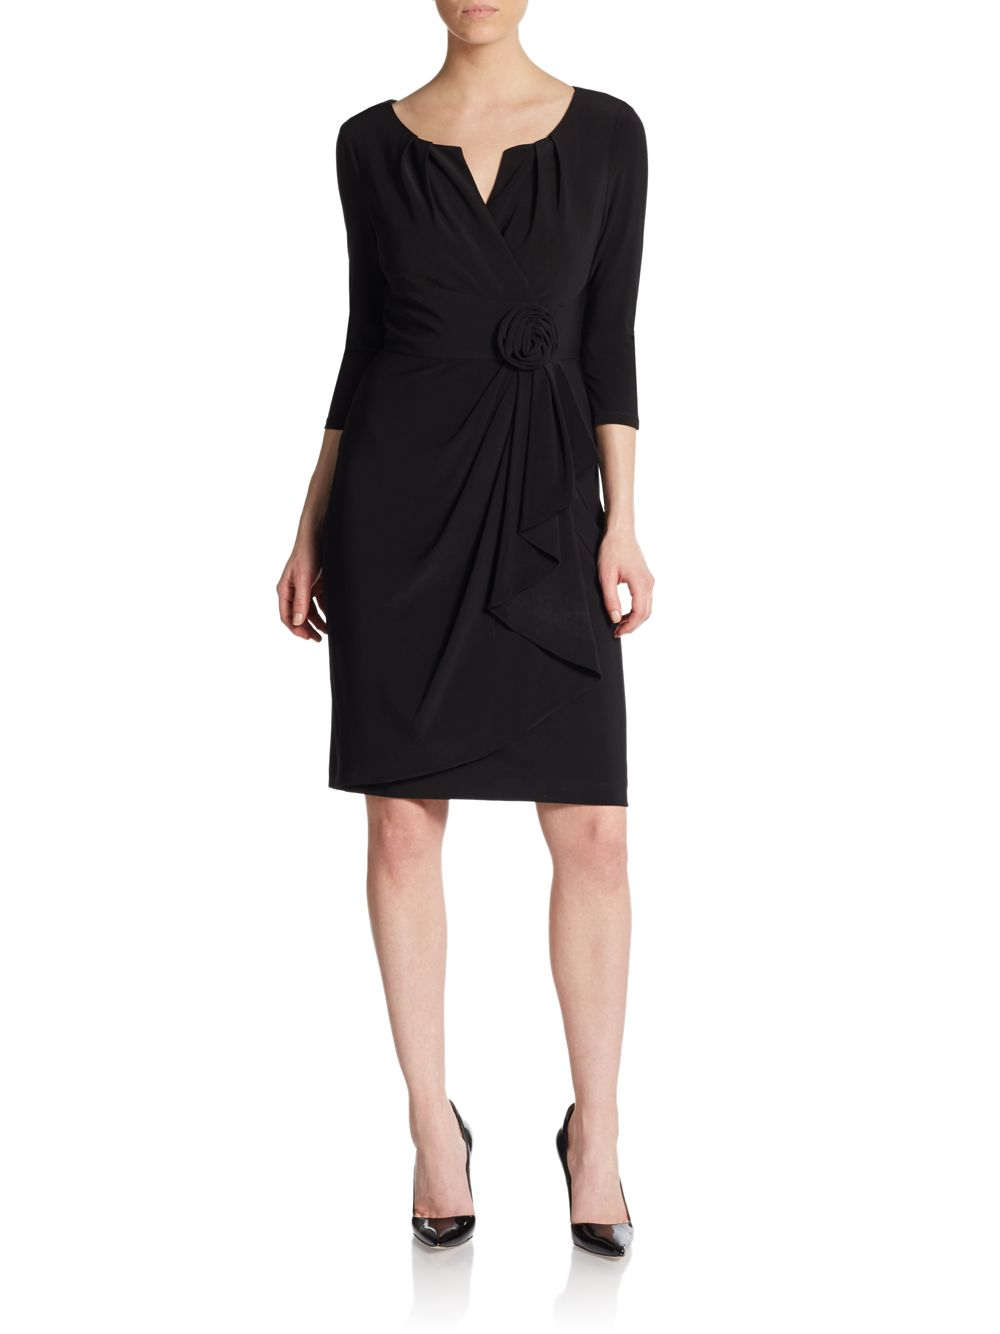 Lyst - Saks Fifth Avenue Black Label Draped Faux Wrap Jersey Dress in Black